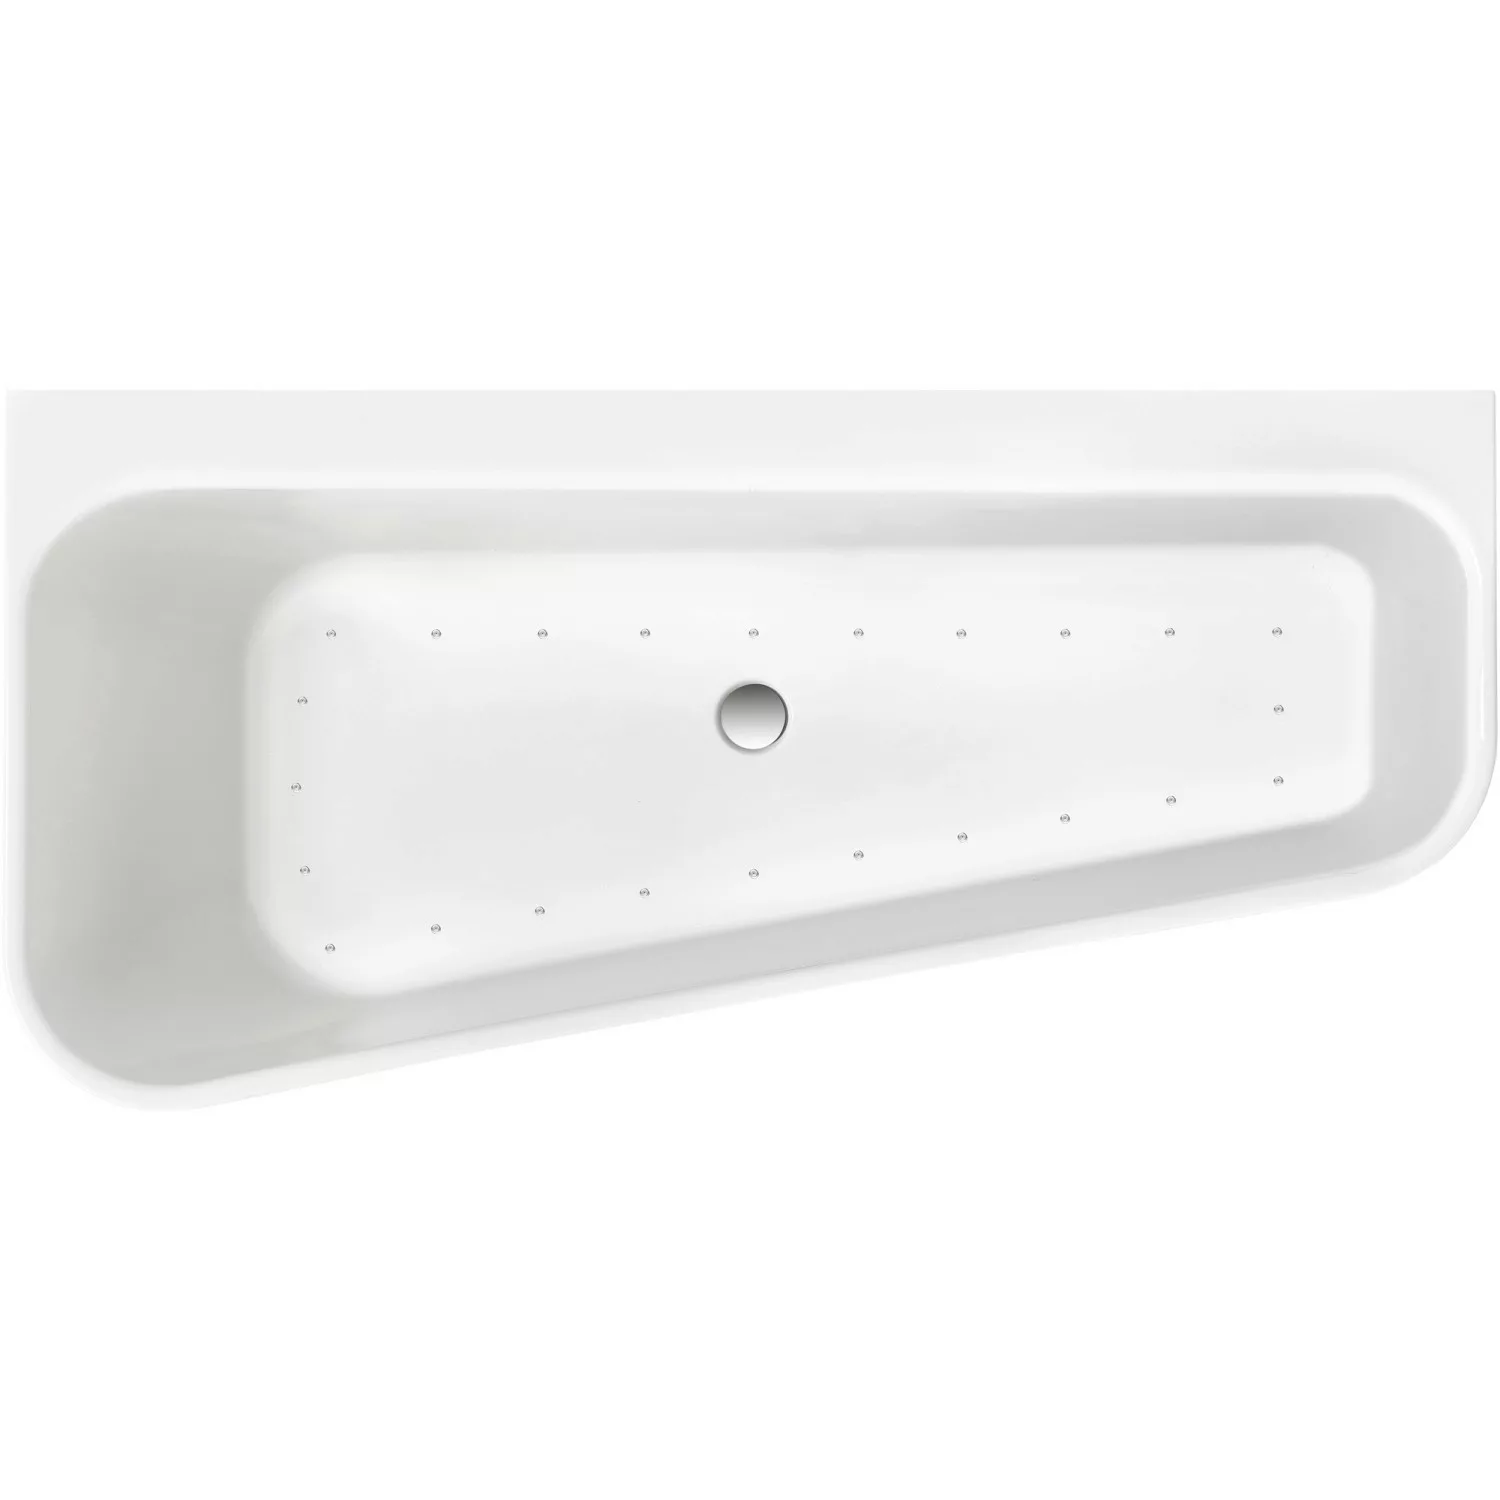 Ottofond Whirlpool Pino Mod. A Komfort-Silentsystem 155 cm x 75 cm Weiß günstig online kaufen